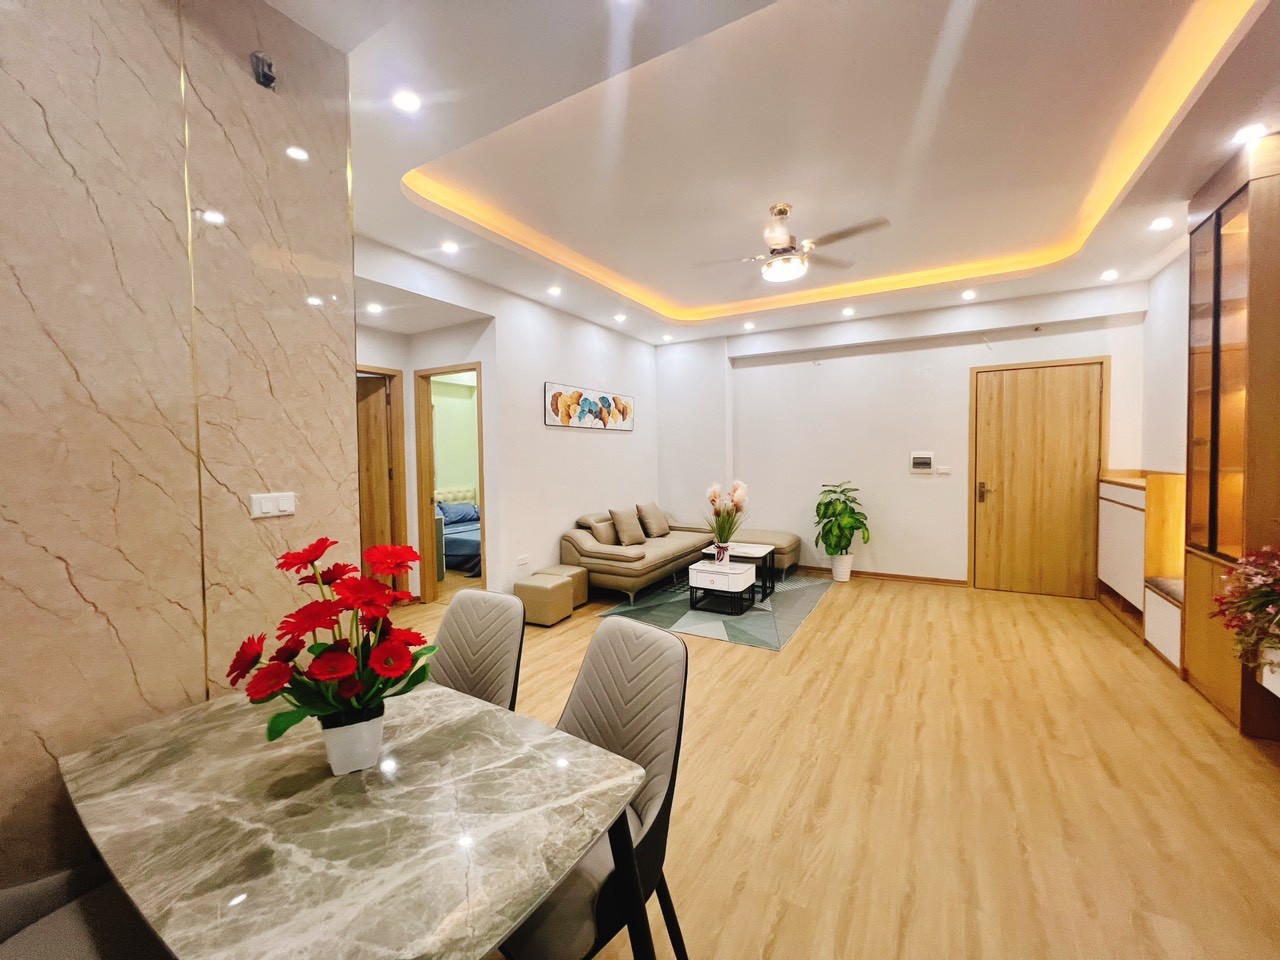 Cần bán căn hộ góc 2PN full nội thất, giá rẻ nhất tại KĐT Thanh Hà Cienco 5 2